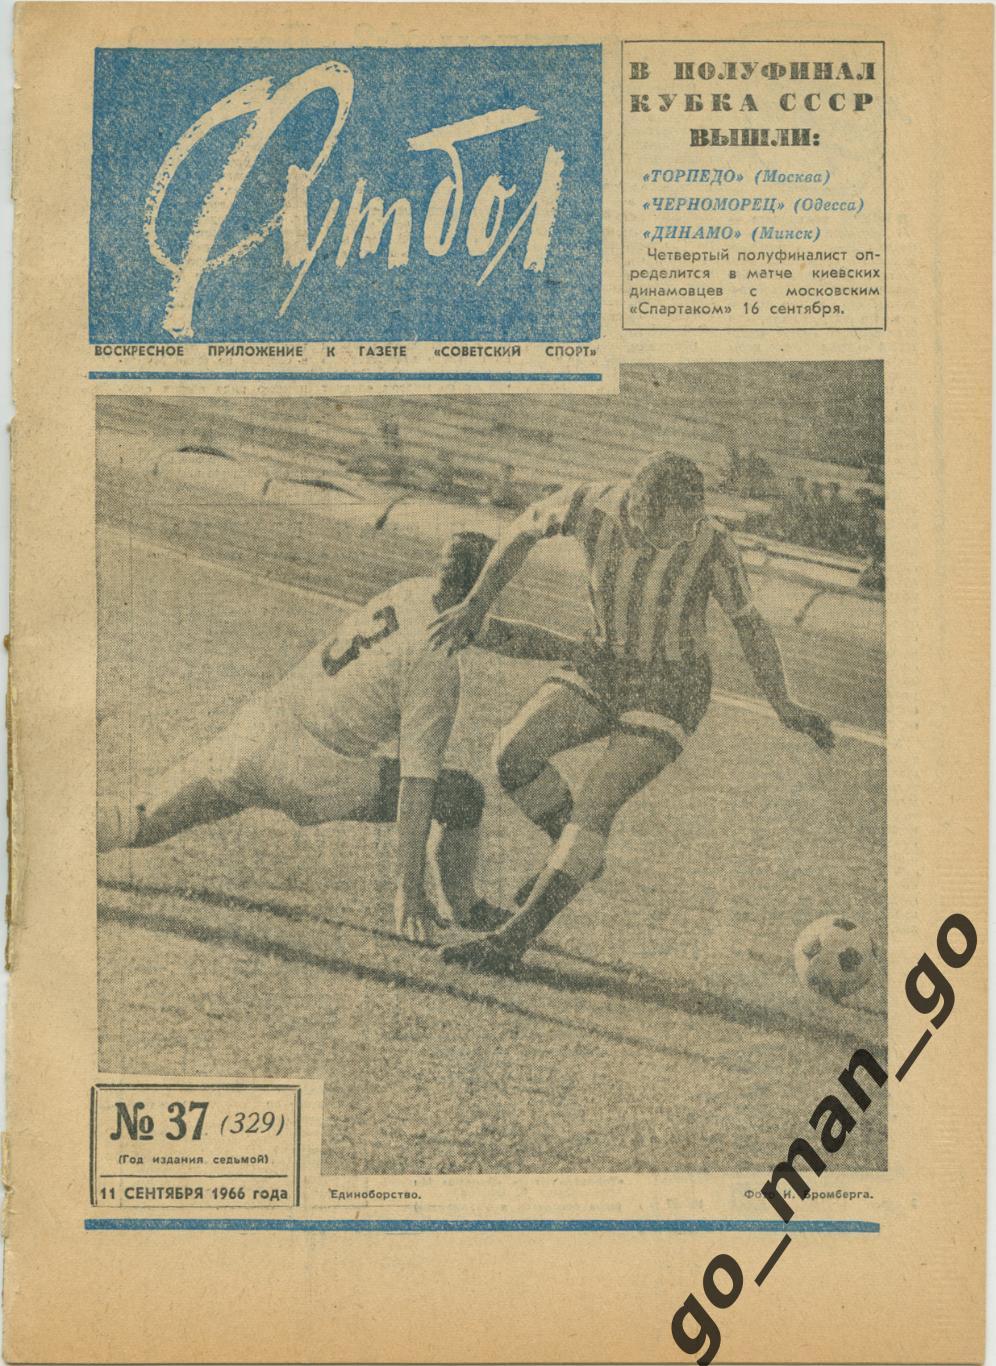 Еженедельник Футбол 1966, № 37, синяя обложка.